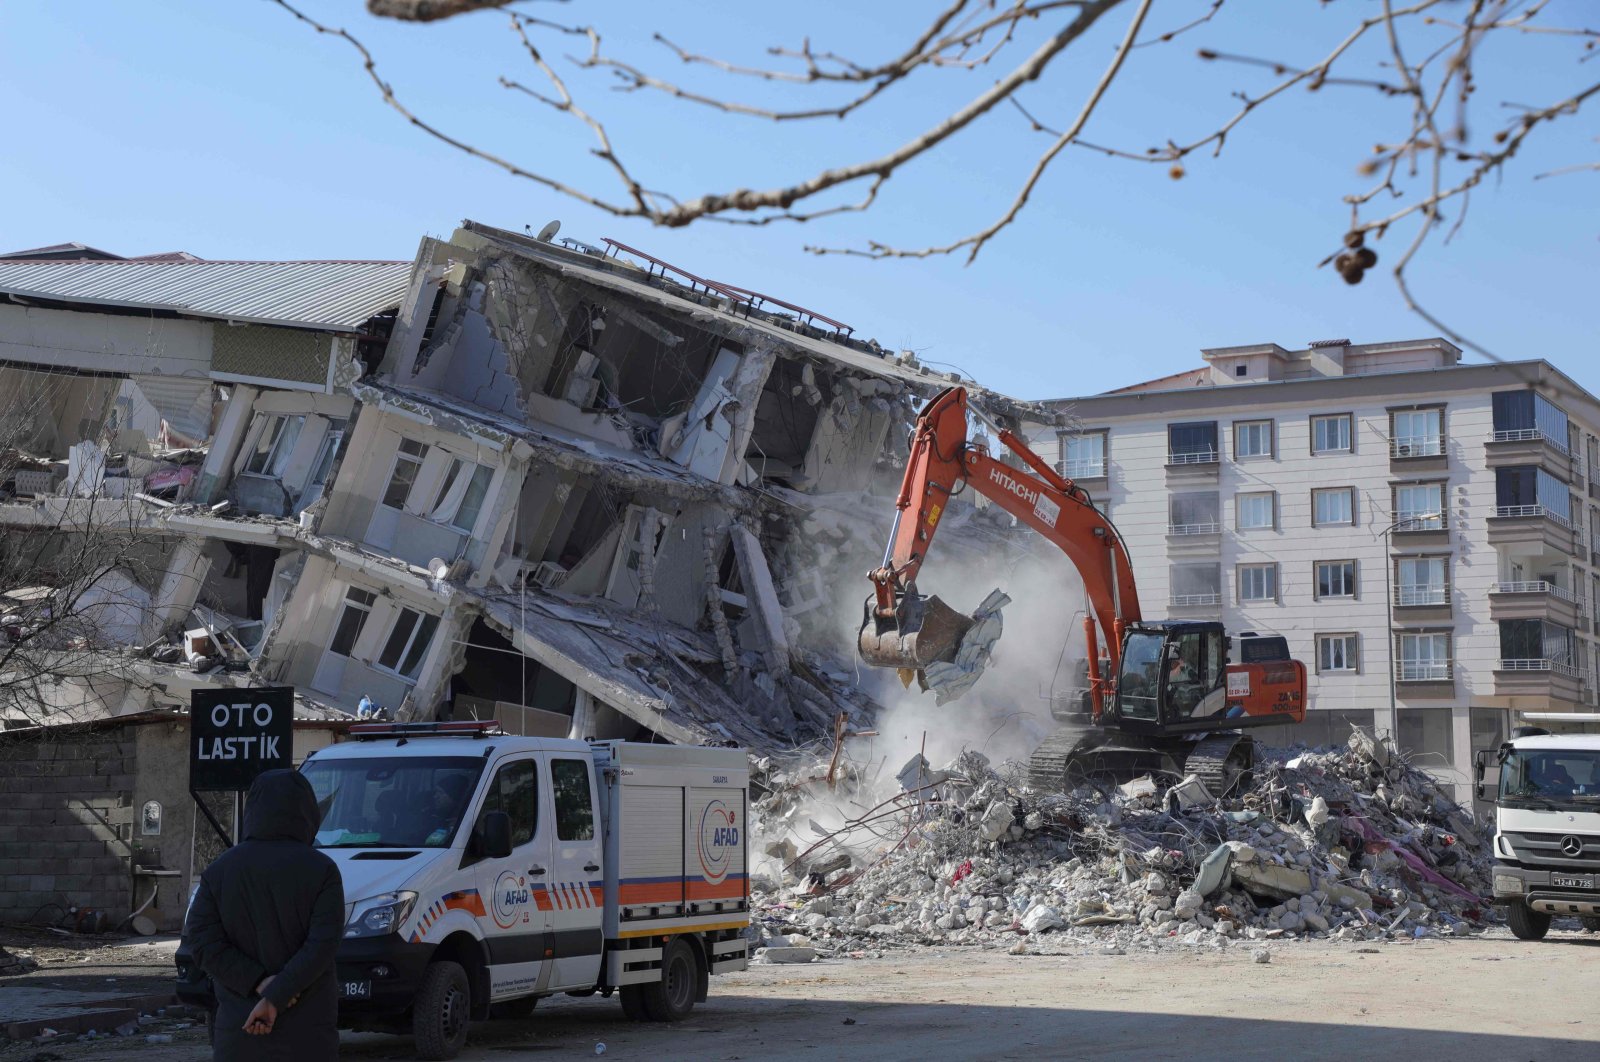 Jaksa Turki akan membentuk unit untuk menyelidiki kejahatan terkait gempa